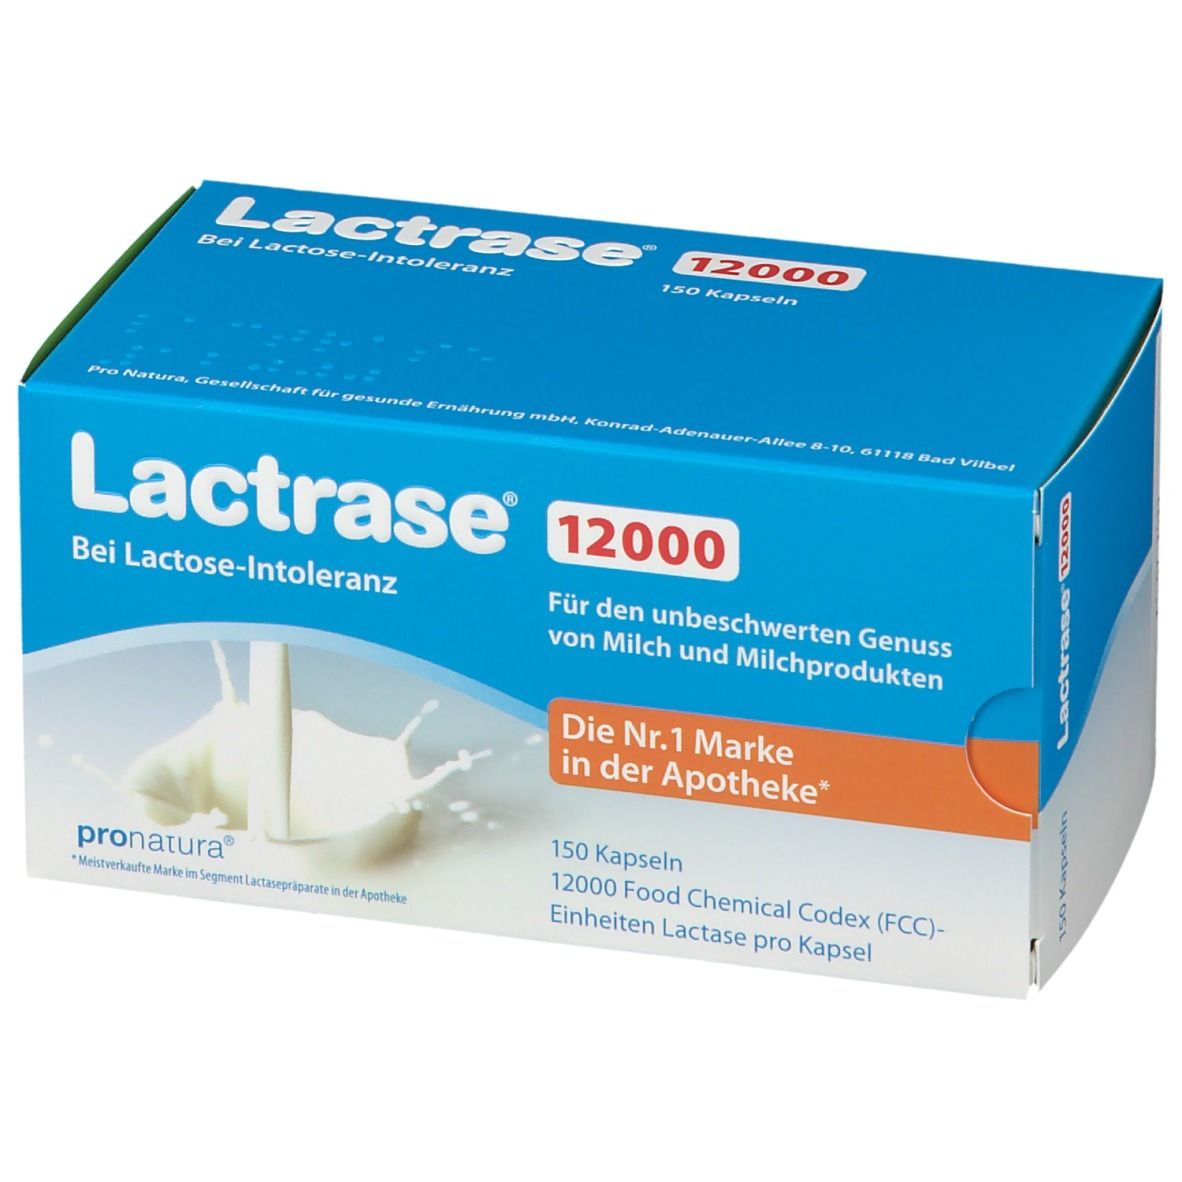 Lactrase® 12000 FCC